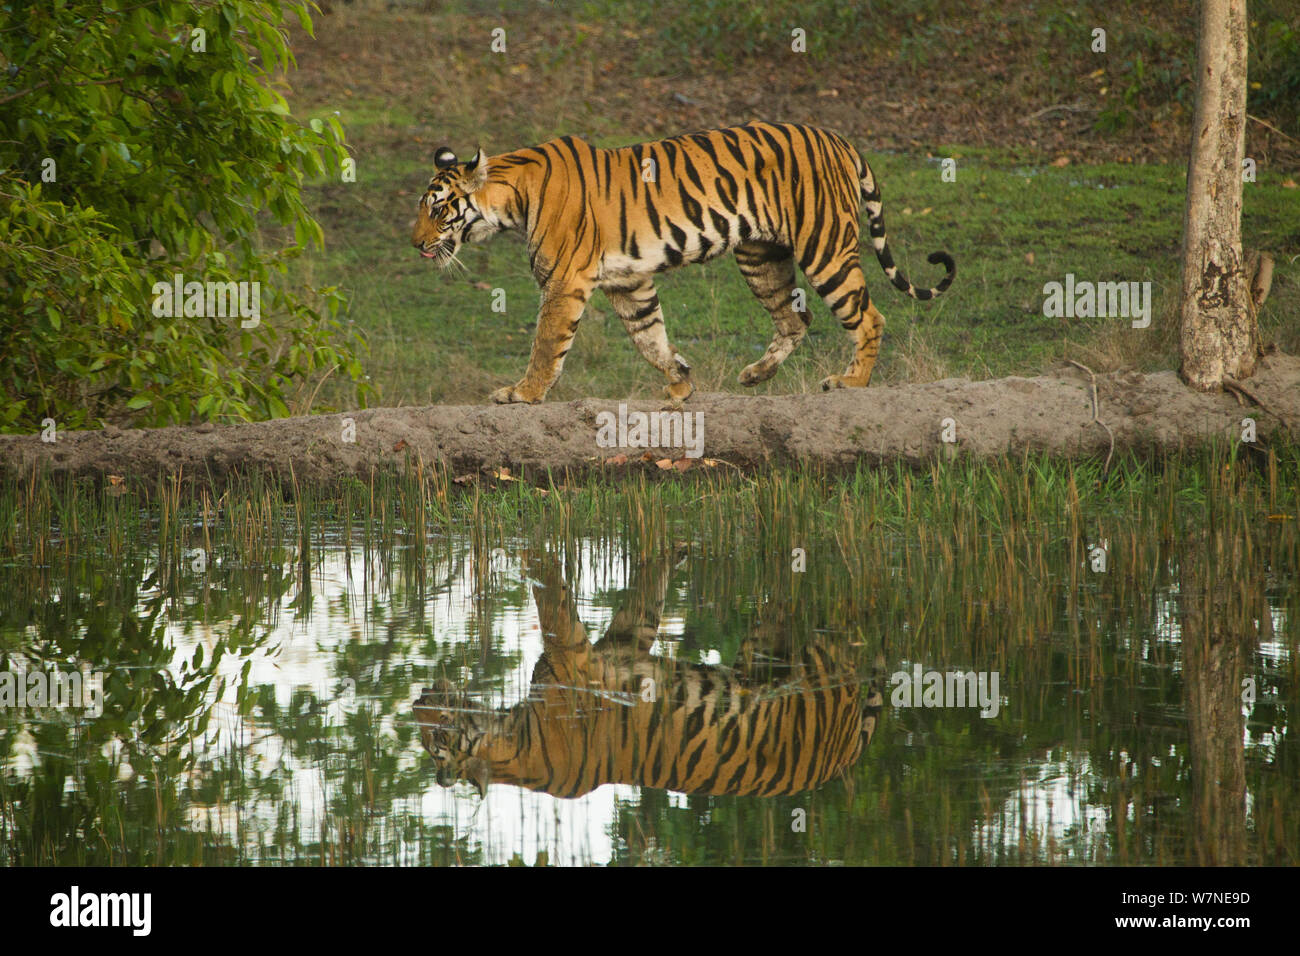 Tigre de Bengala (Panthera tigris tigris) hembra caminando a lo largo del camino, que se refleja en el agua, el Parque Nacional de Bandhavgarh, en Madhya Pradesh, India Foto de stock